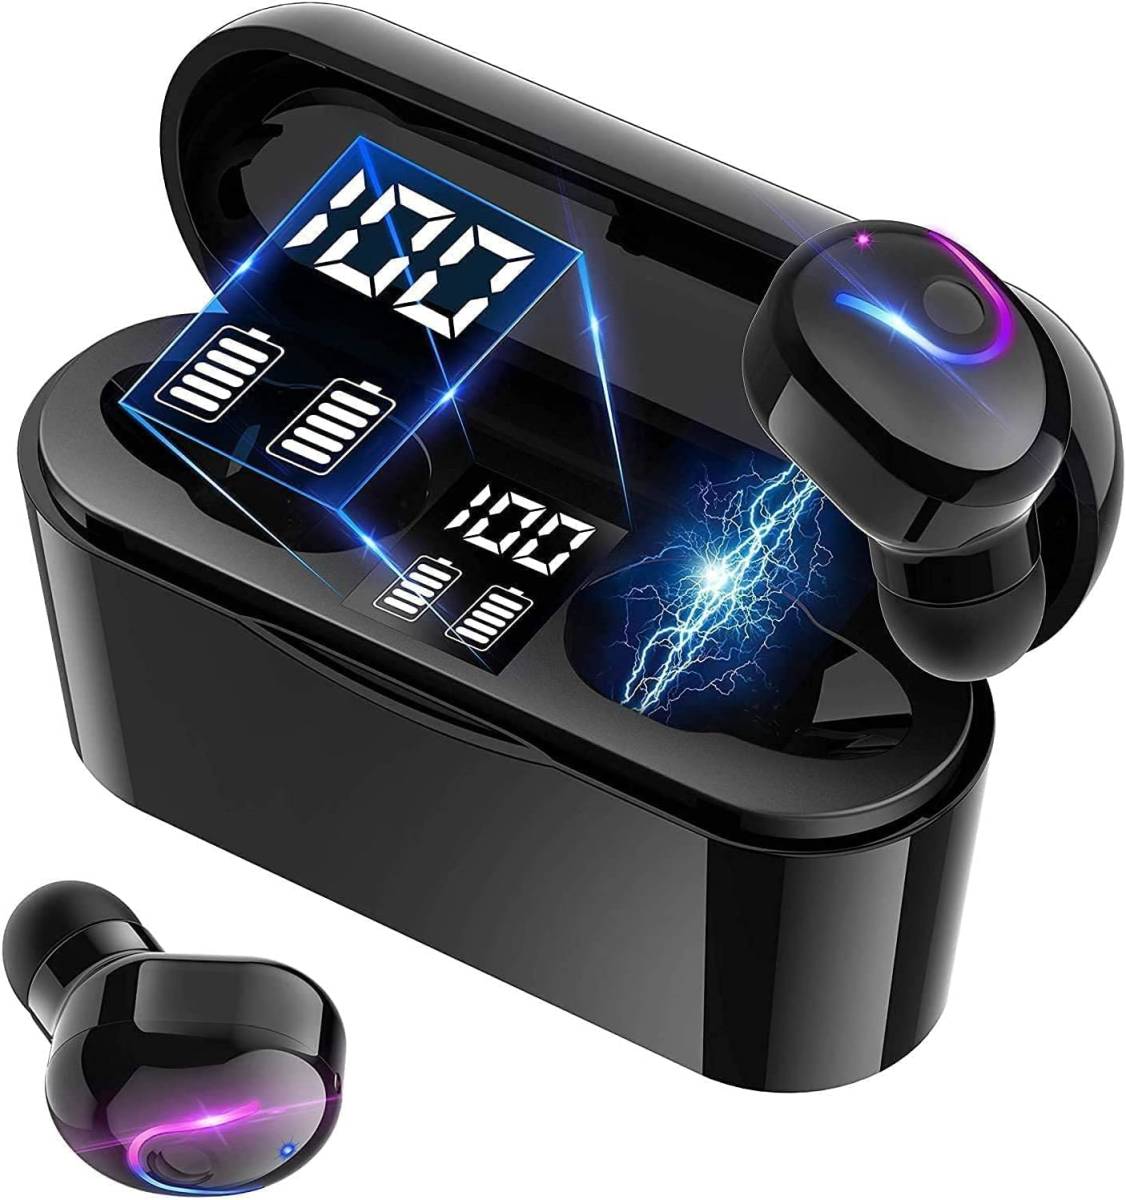 【最新Bluetooth5.0技術】 ワイヤレスイヤホン Bluetoothイヤホン 両耳 左右分離型 1200mAH 最大40時間音楽再生 瞬時接続 マイク内蔵 防水